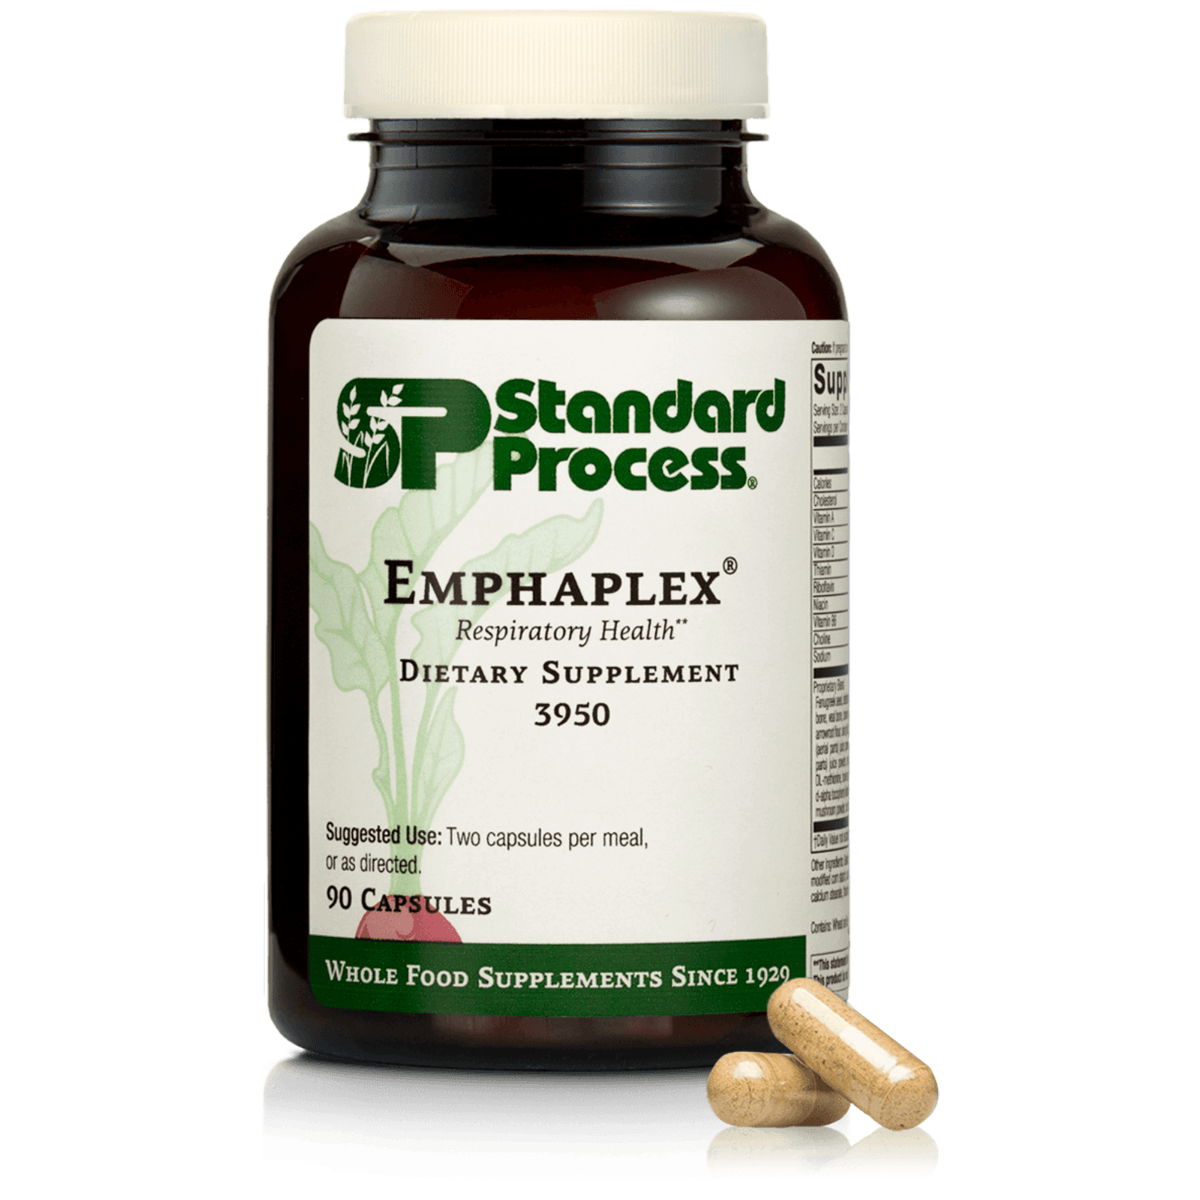 Primary Image of Emphaplex Capsules